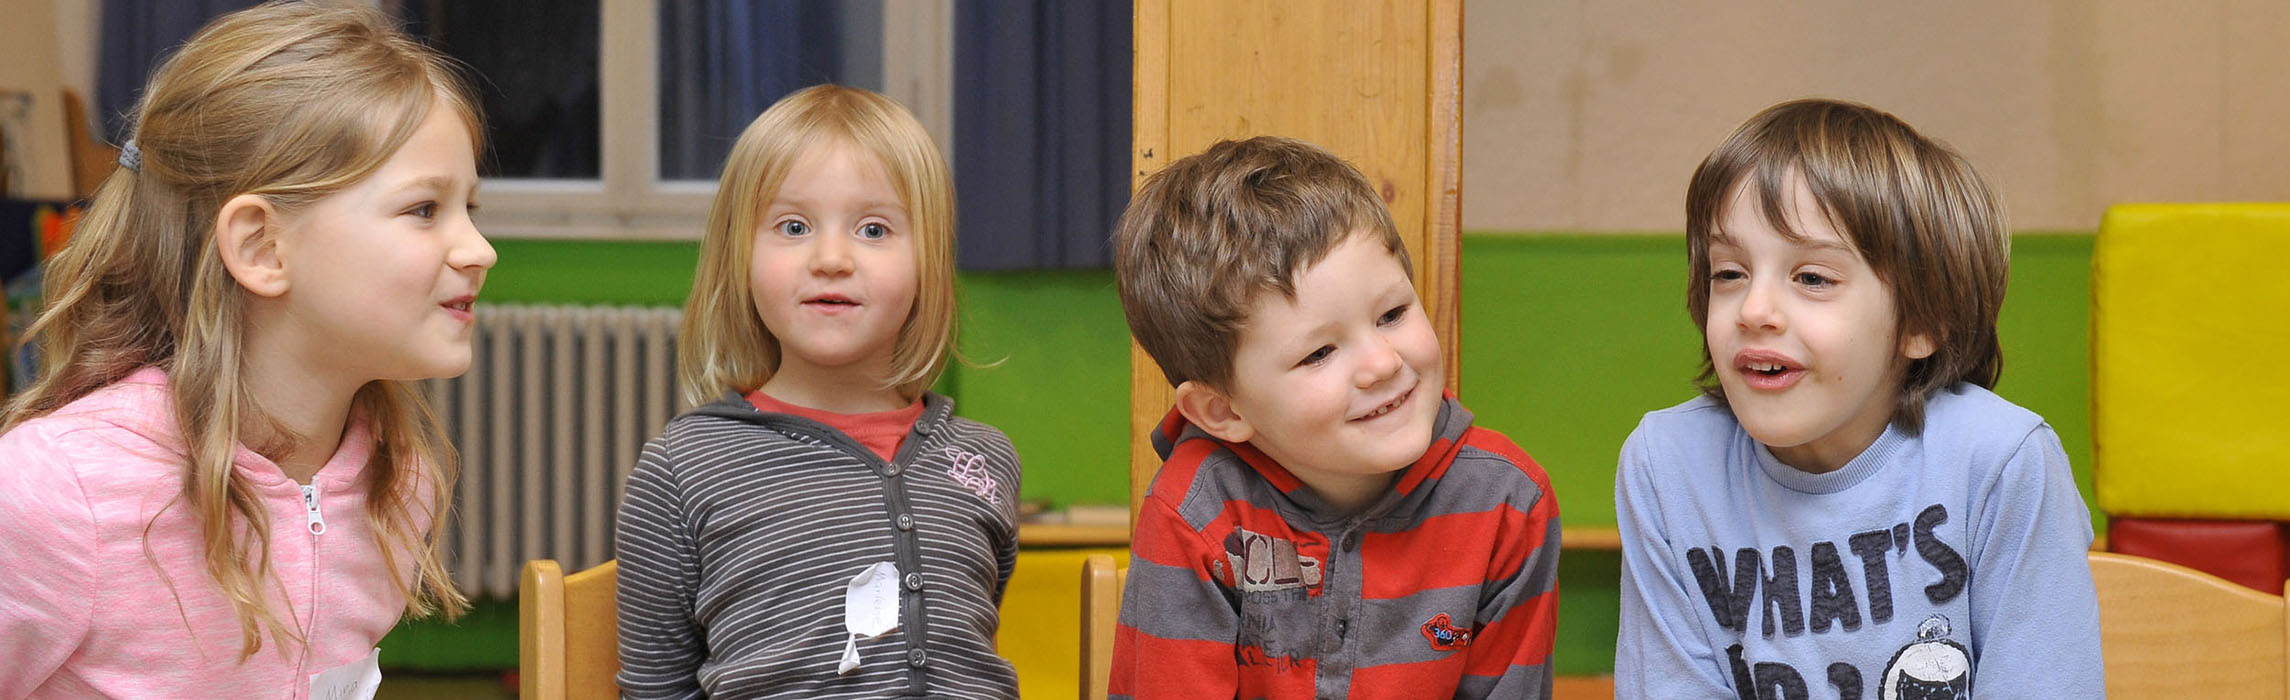 海德堡幼儿园里的小孩们 (照片来源: Dorn)